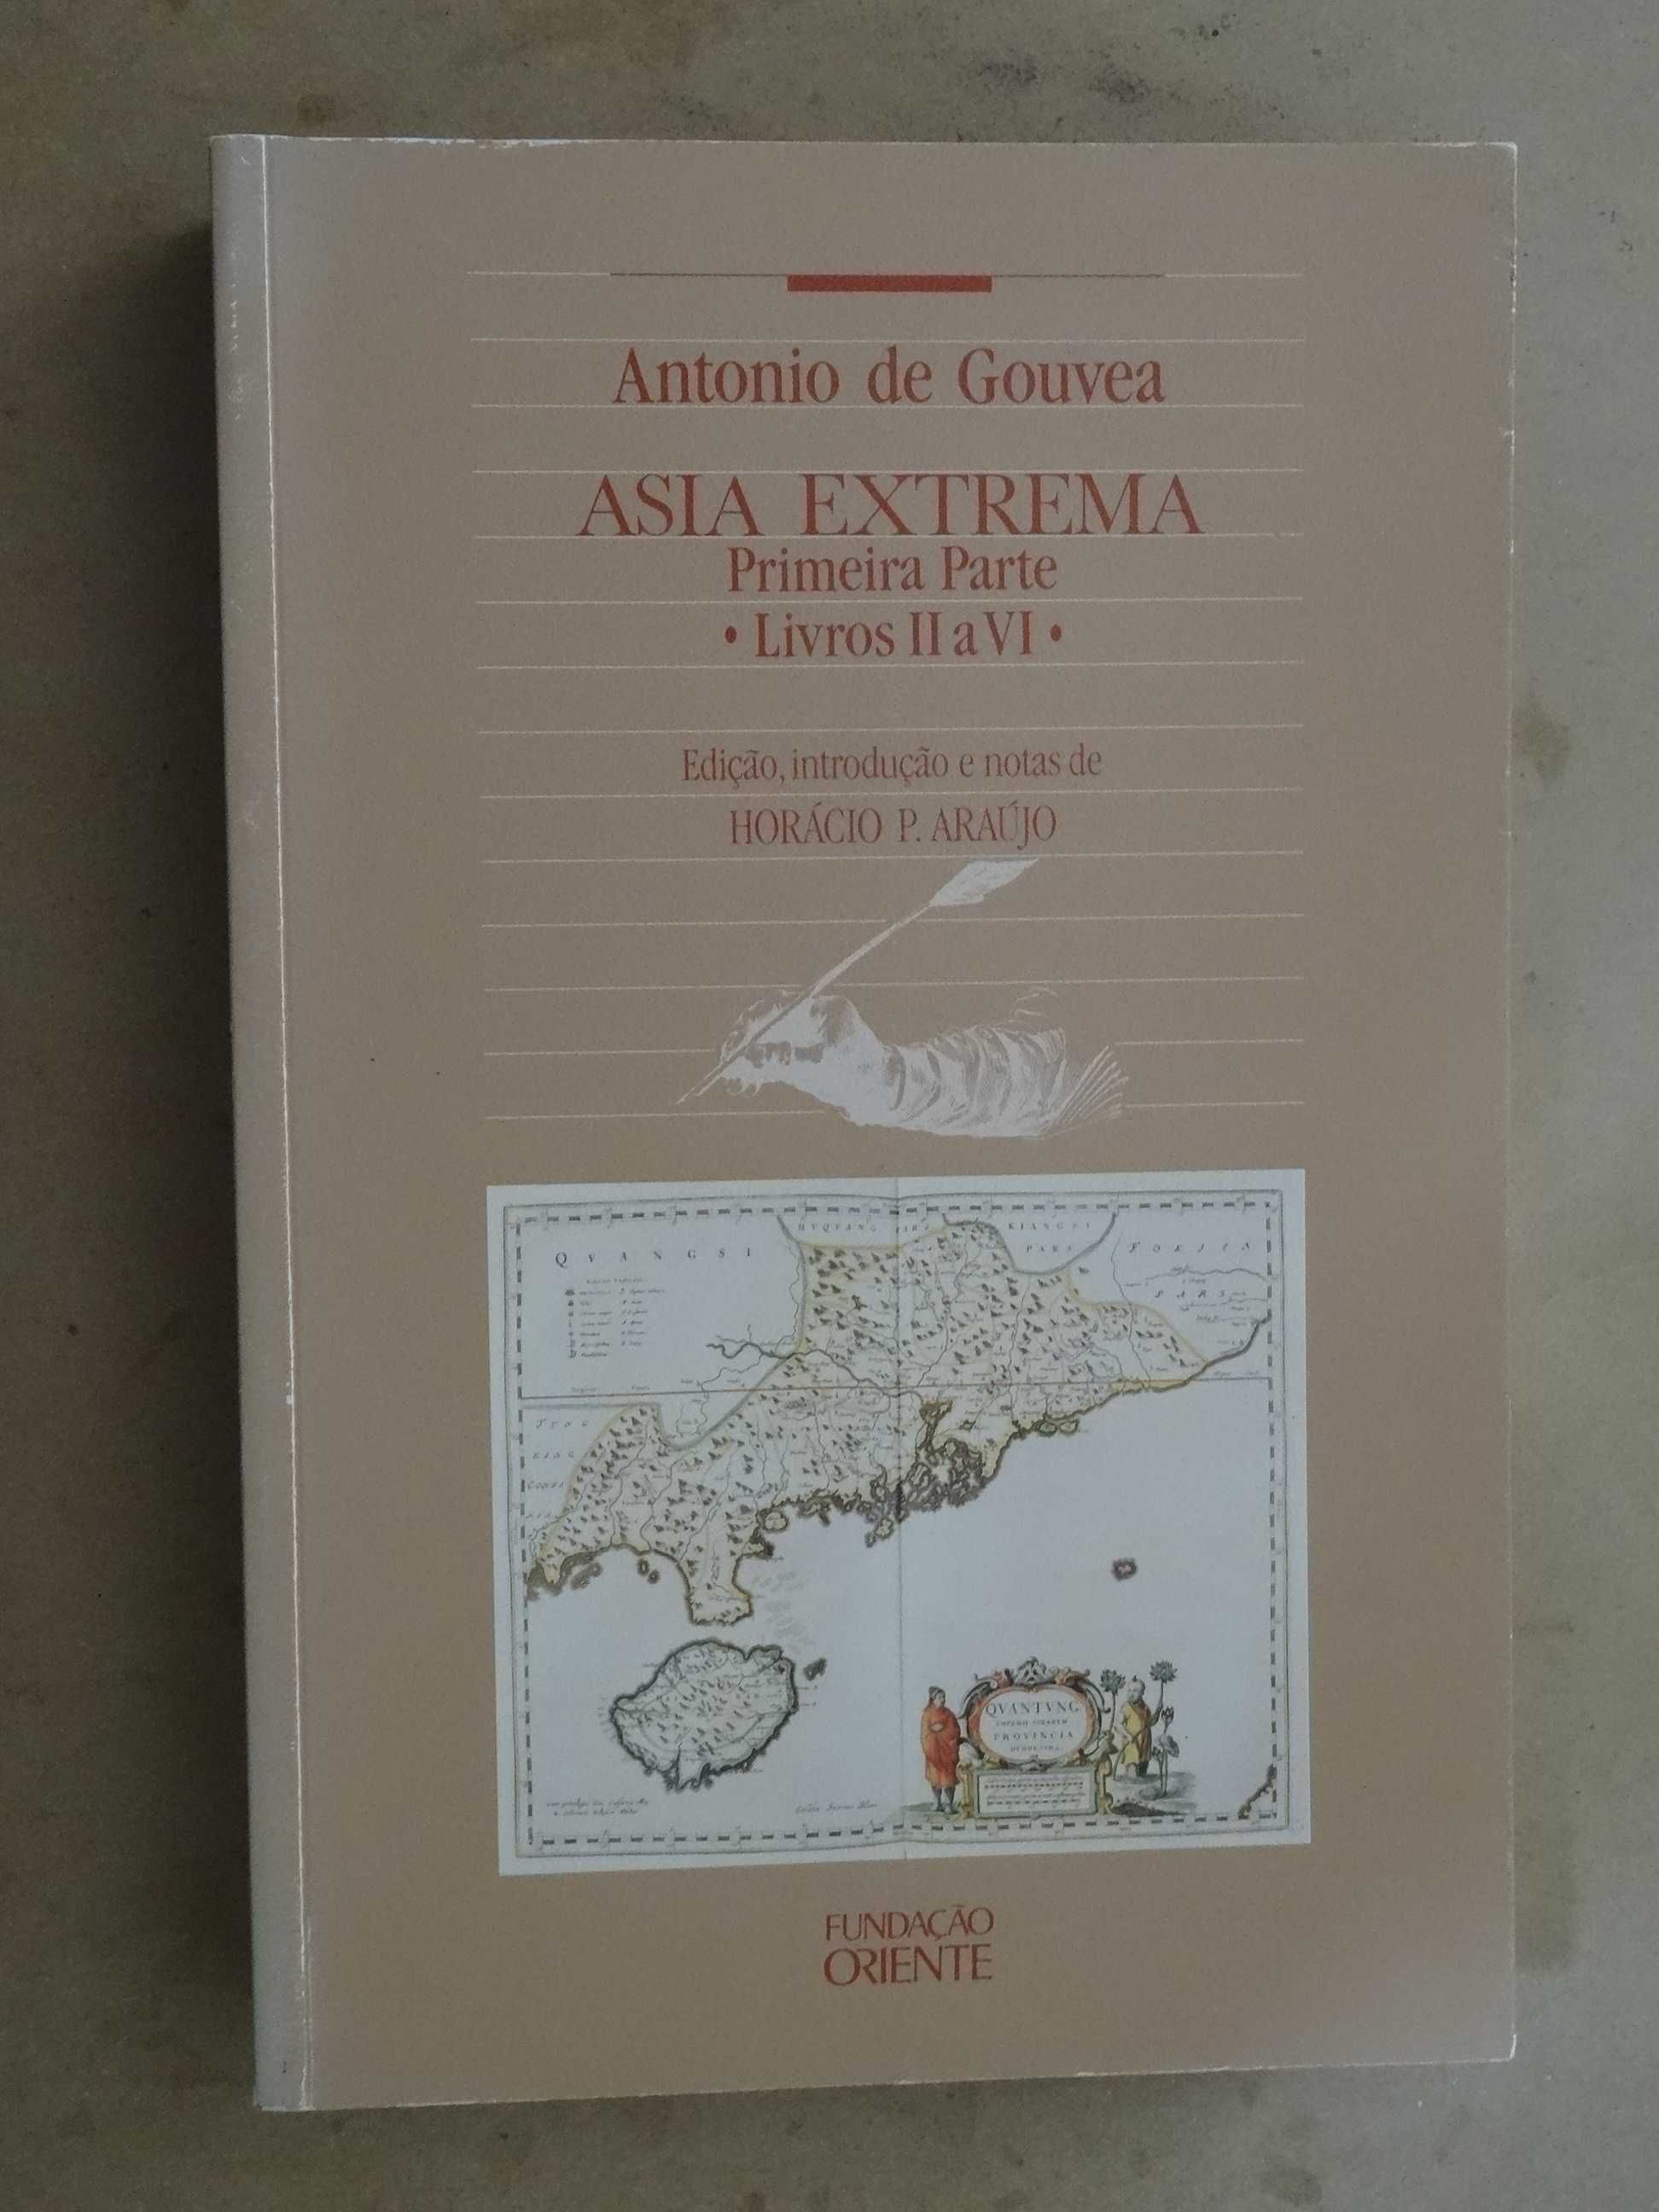 Asia Extrema de António de Gouveia